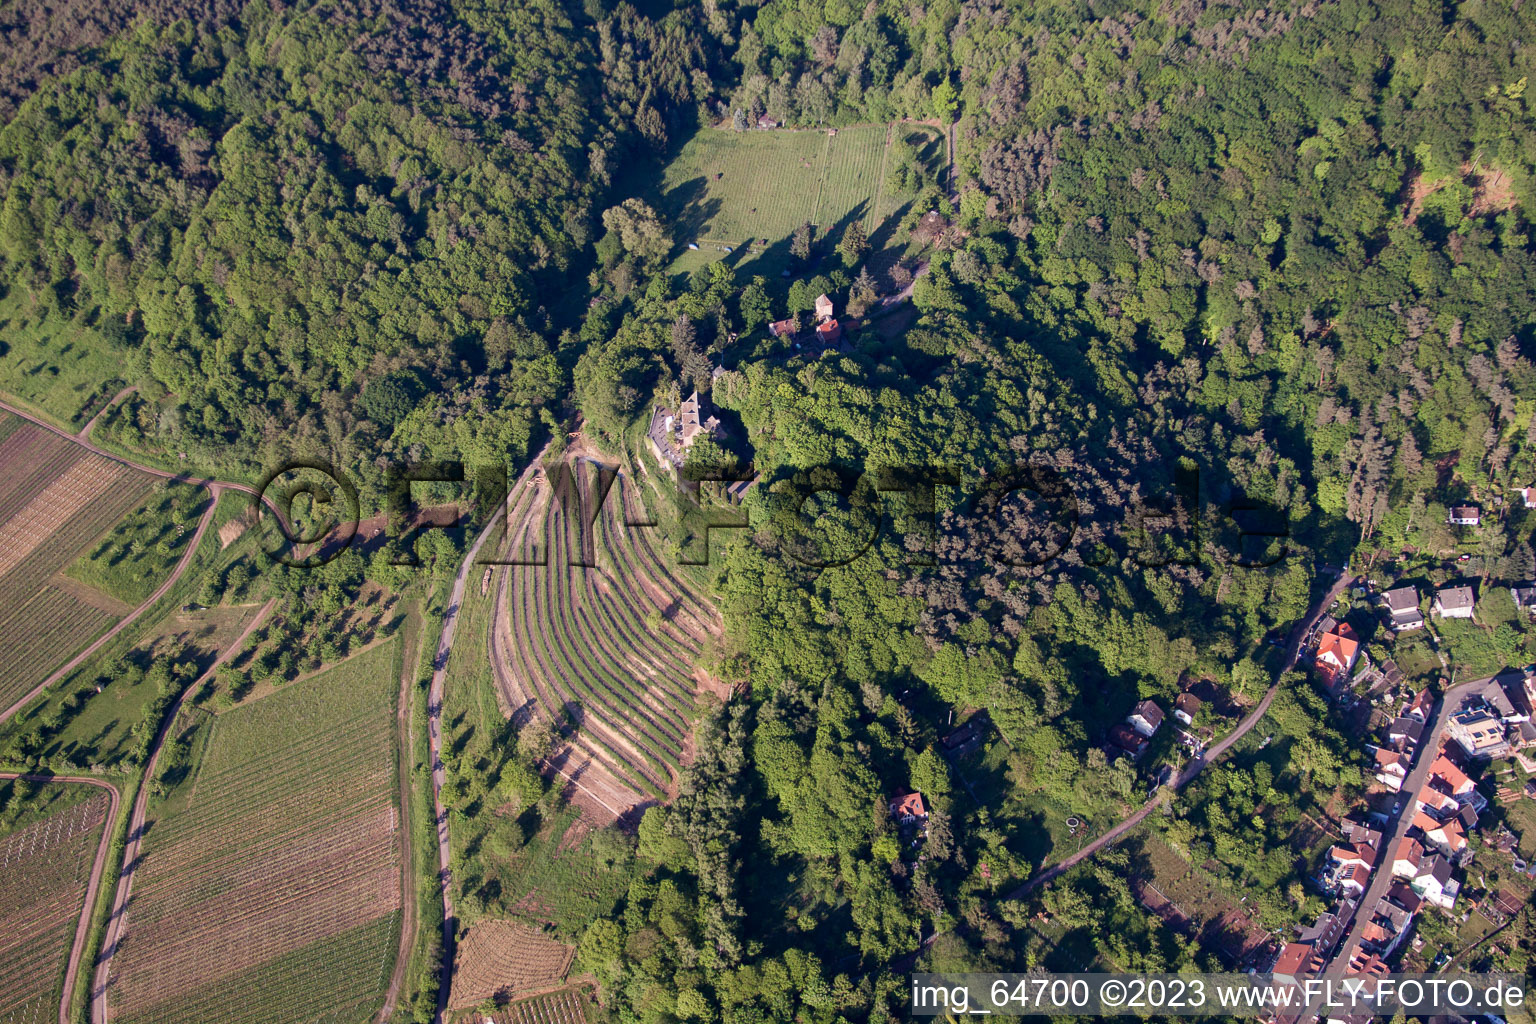 Sankt Martin dans le département Rhénanie-Palatinat, Allemagne d'un drone